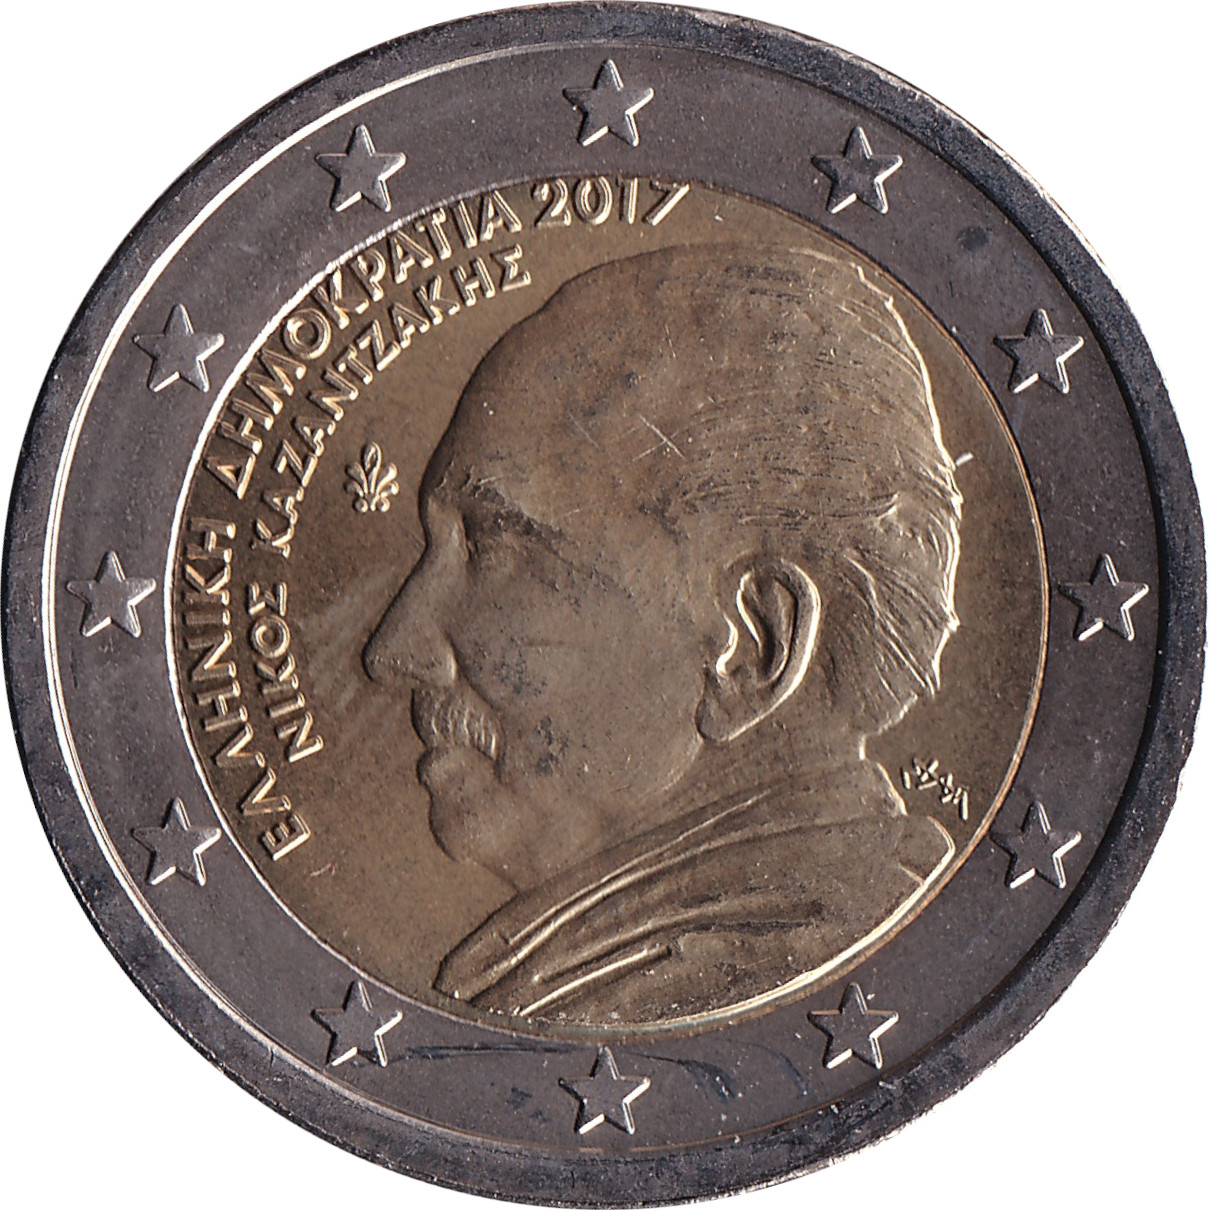 2 euro - Níkos Kazantzákis